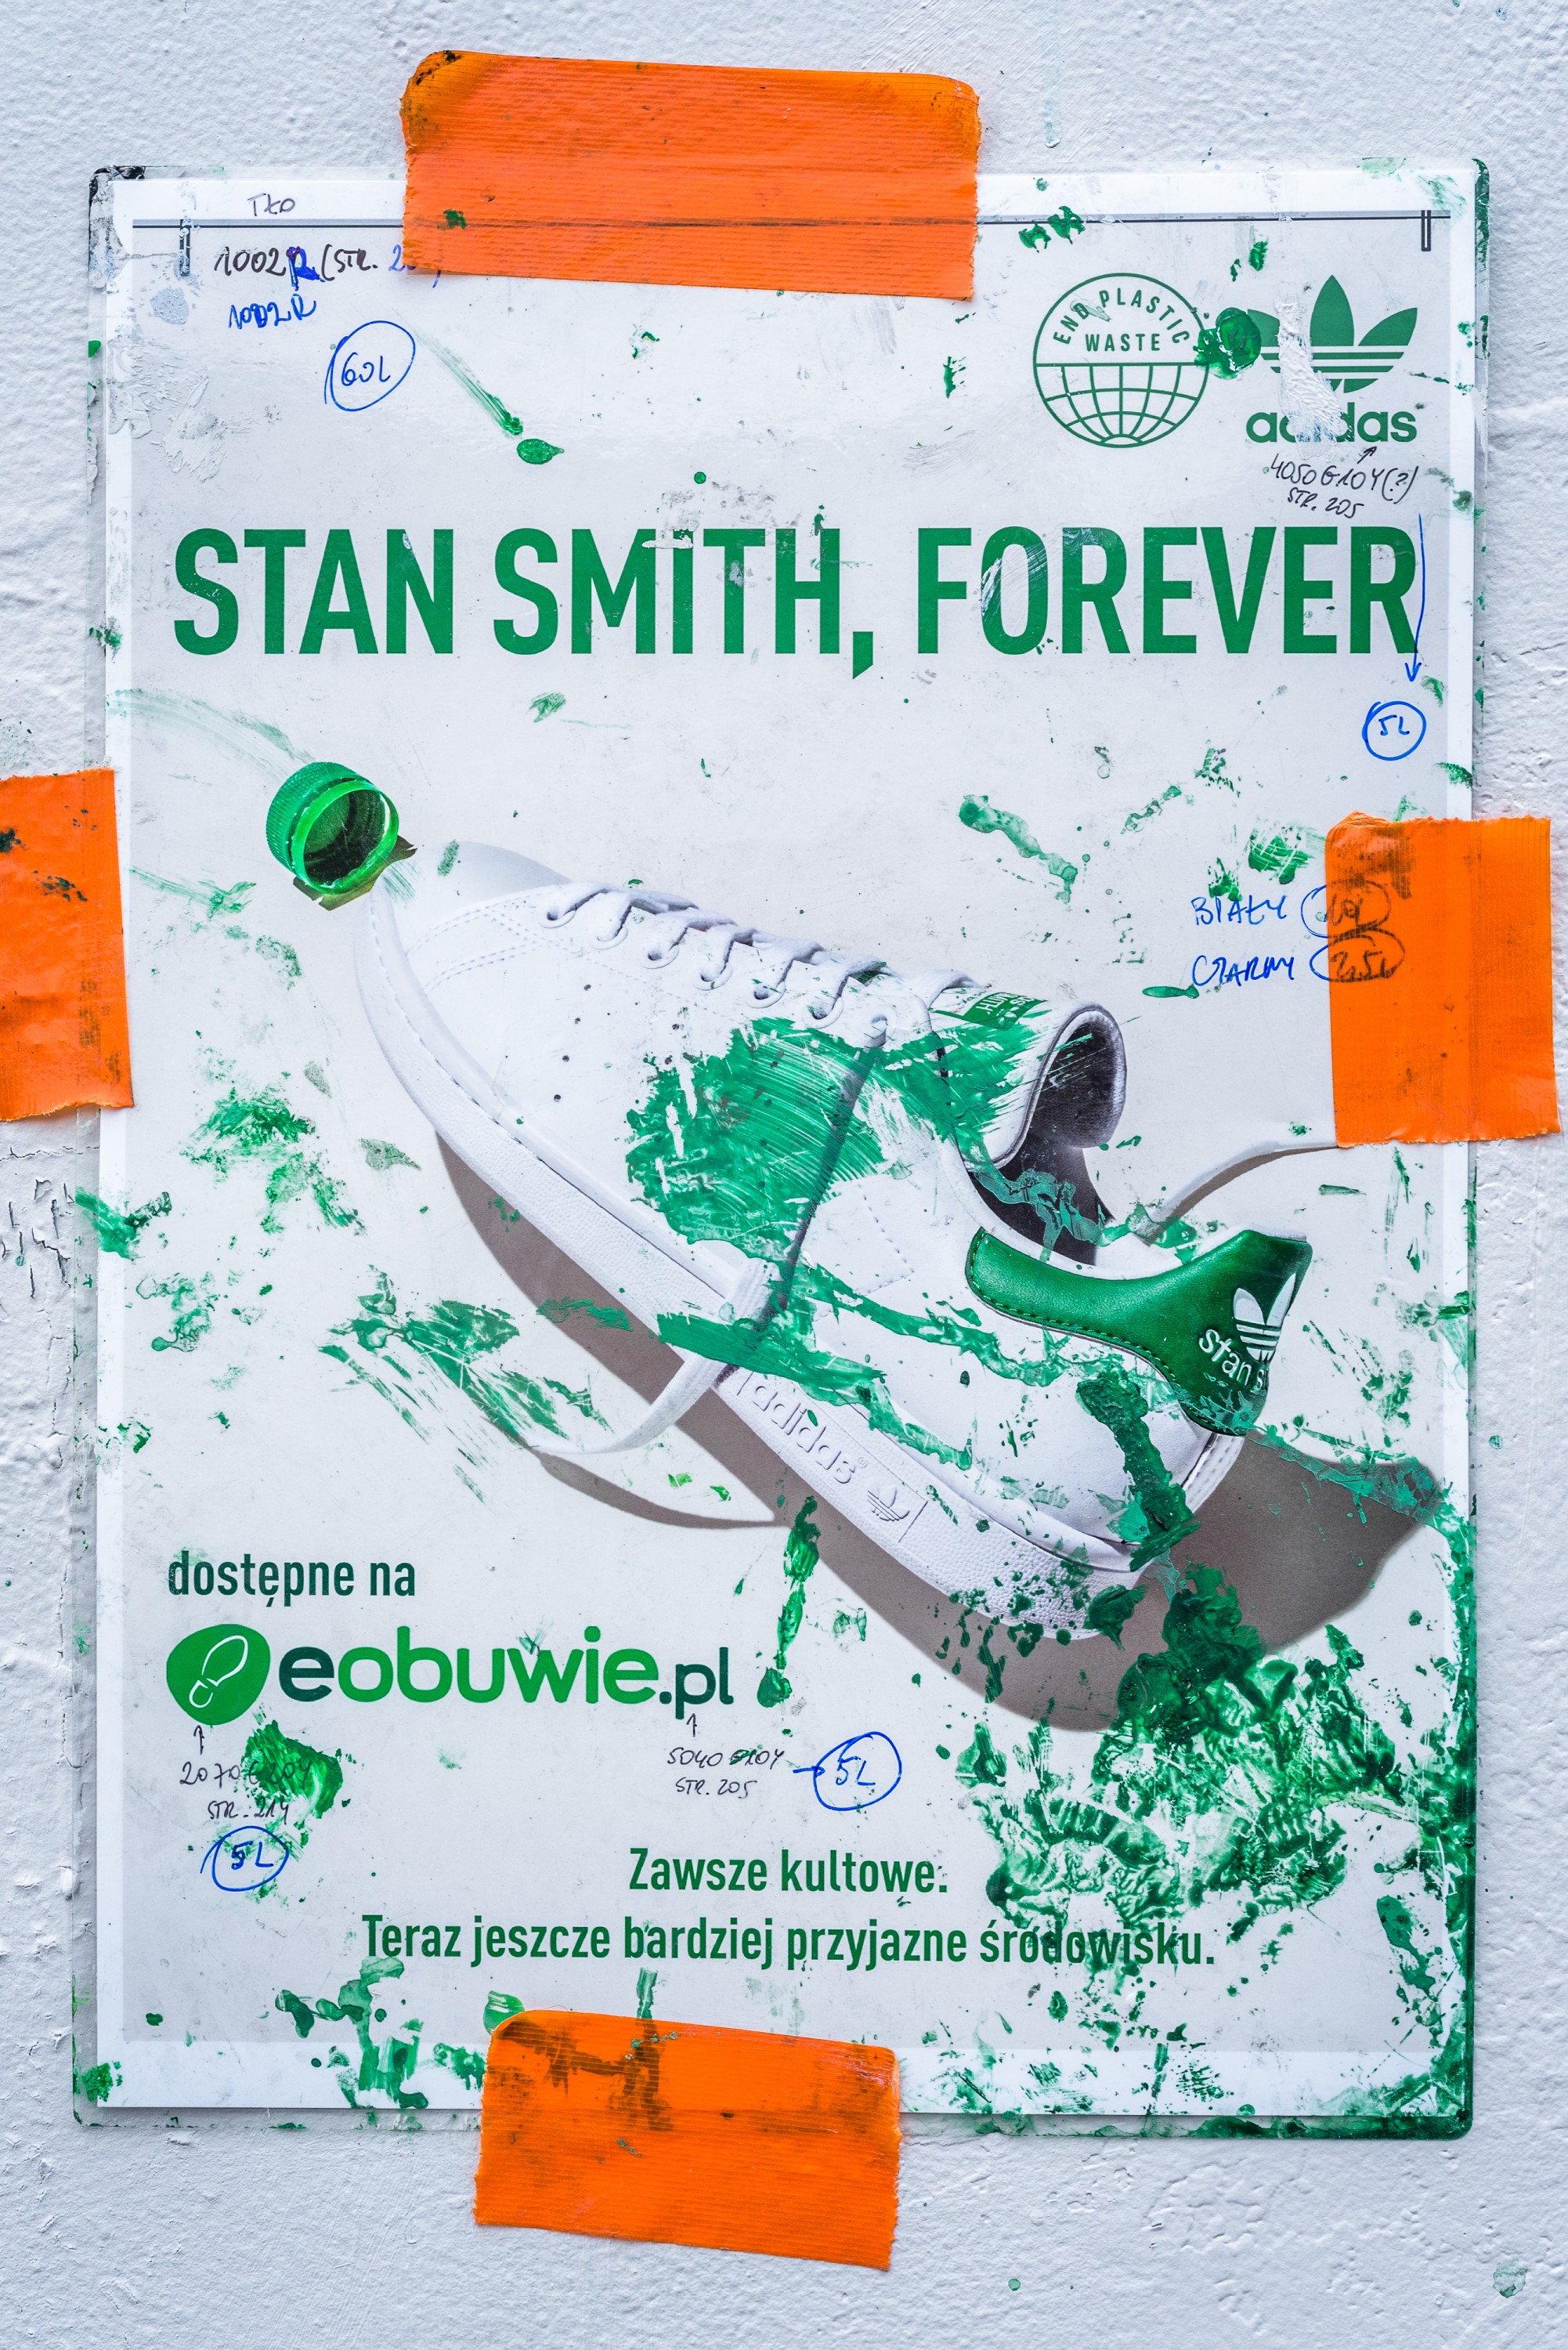 Ręcznie malowana reklama wielkoformatowa Adidas w Warszawie | STAN SMITH, FOREVER | Portfolio